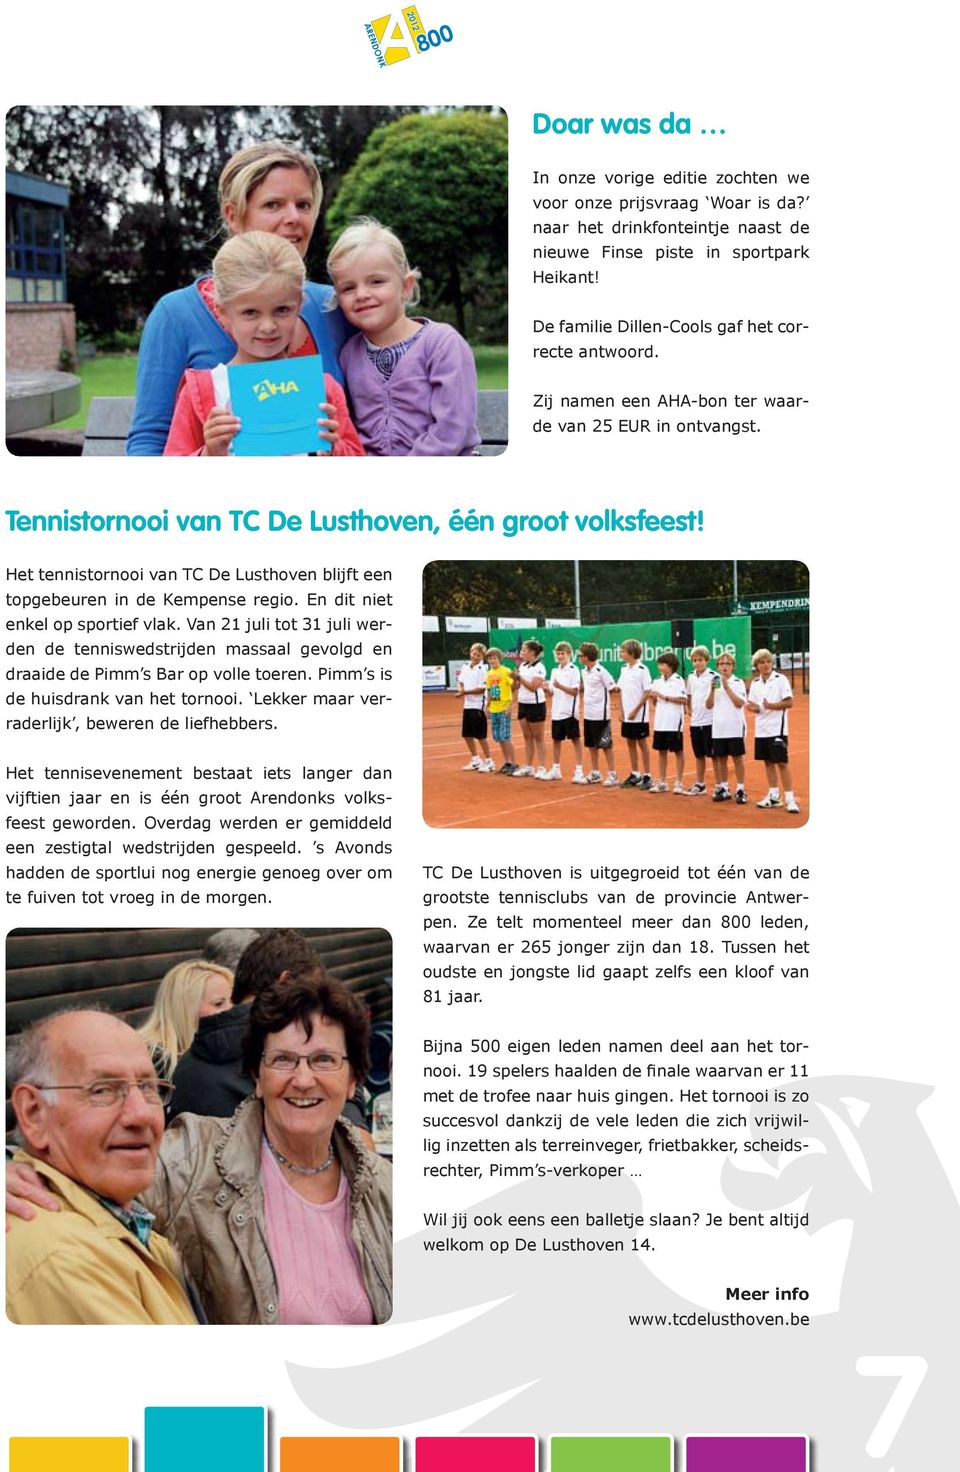 Het tennistornooi van TC De Lusthoven blijft een topgebeuren in de Kempense regio. En dit niet enkel op sportief vlak.